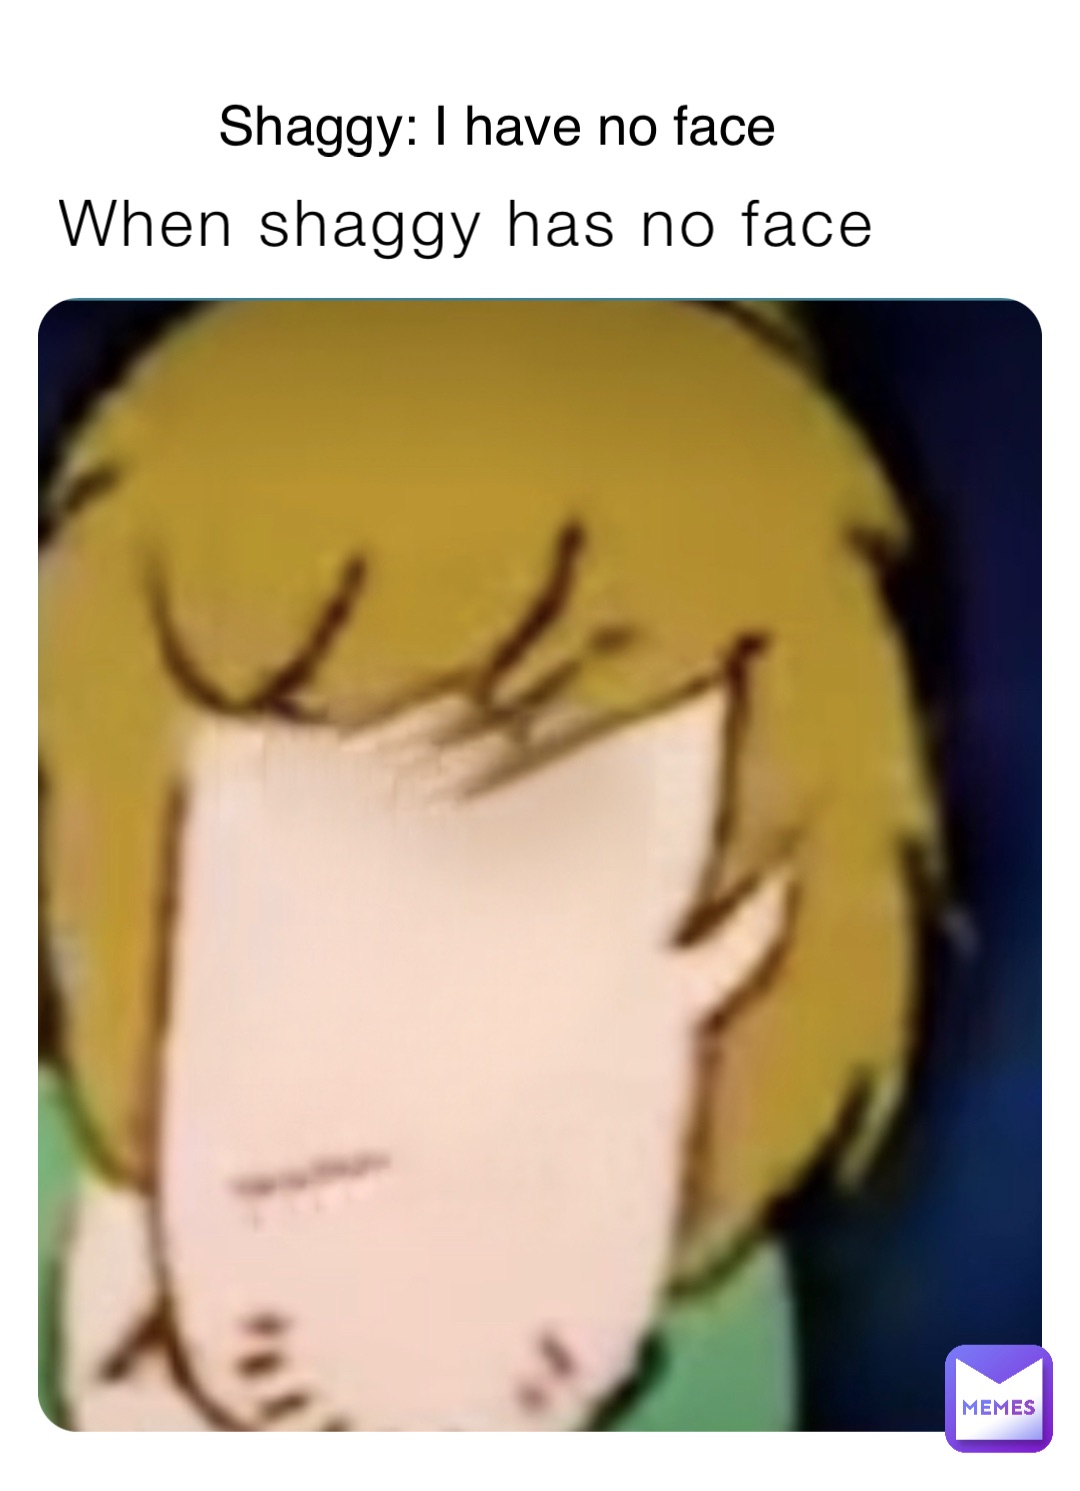 When shaggy has no face Shaggy: I have no face